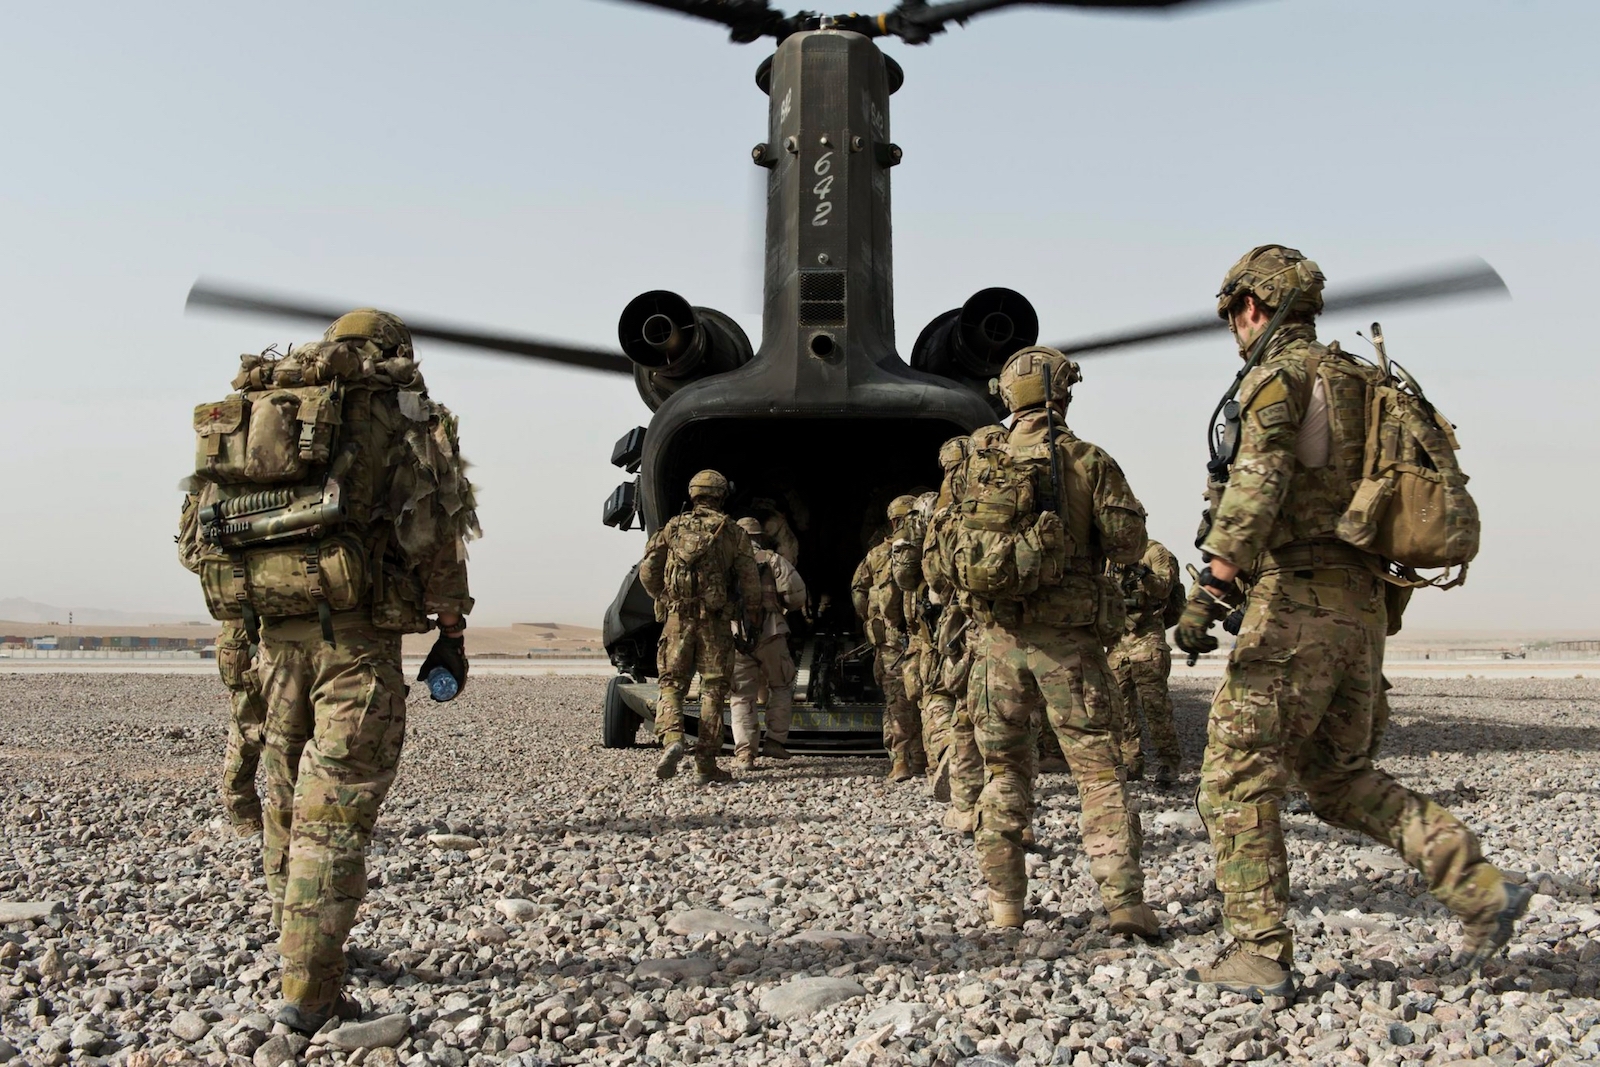 Australian soldiers in Uruzgan province, Afghanistan